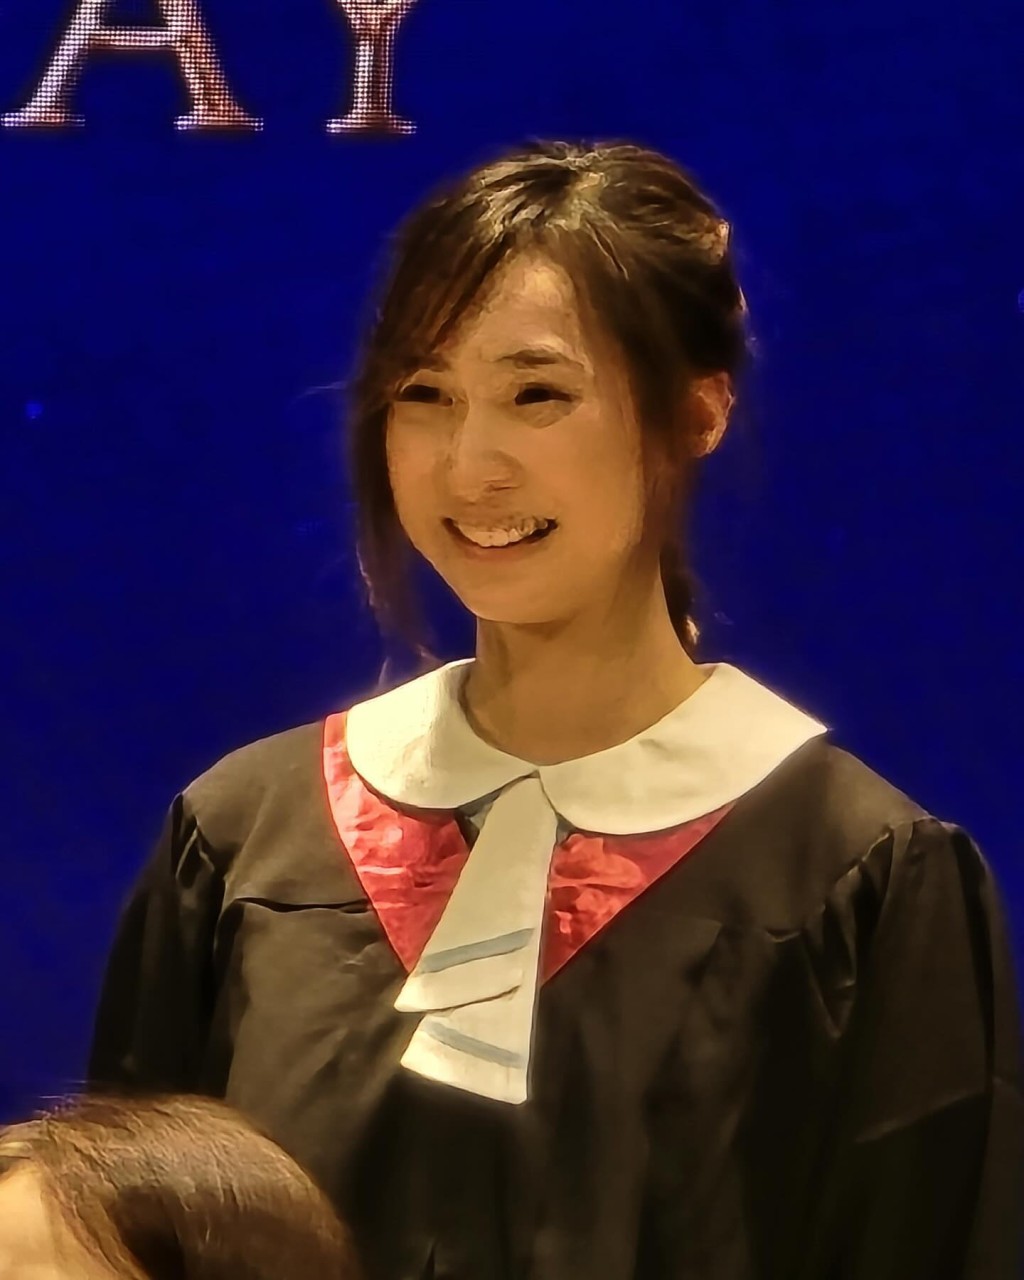 锺柔美再次考获全班第一的成绩。